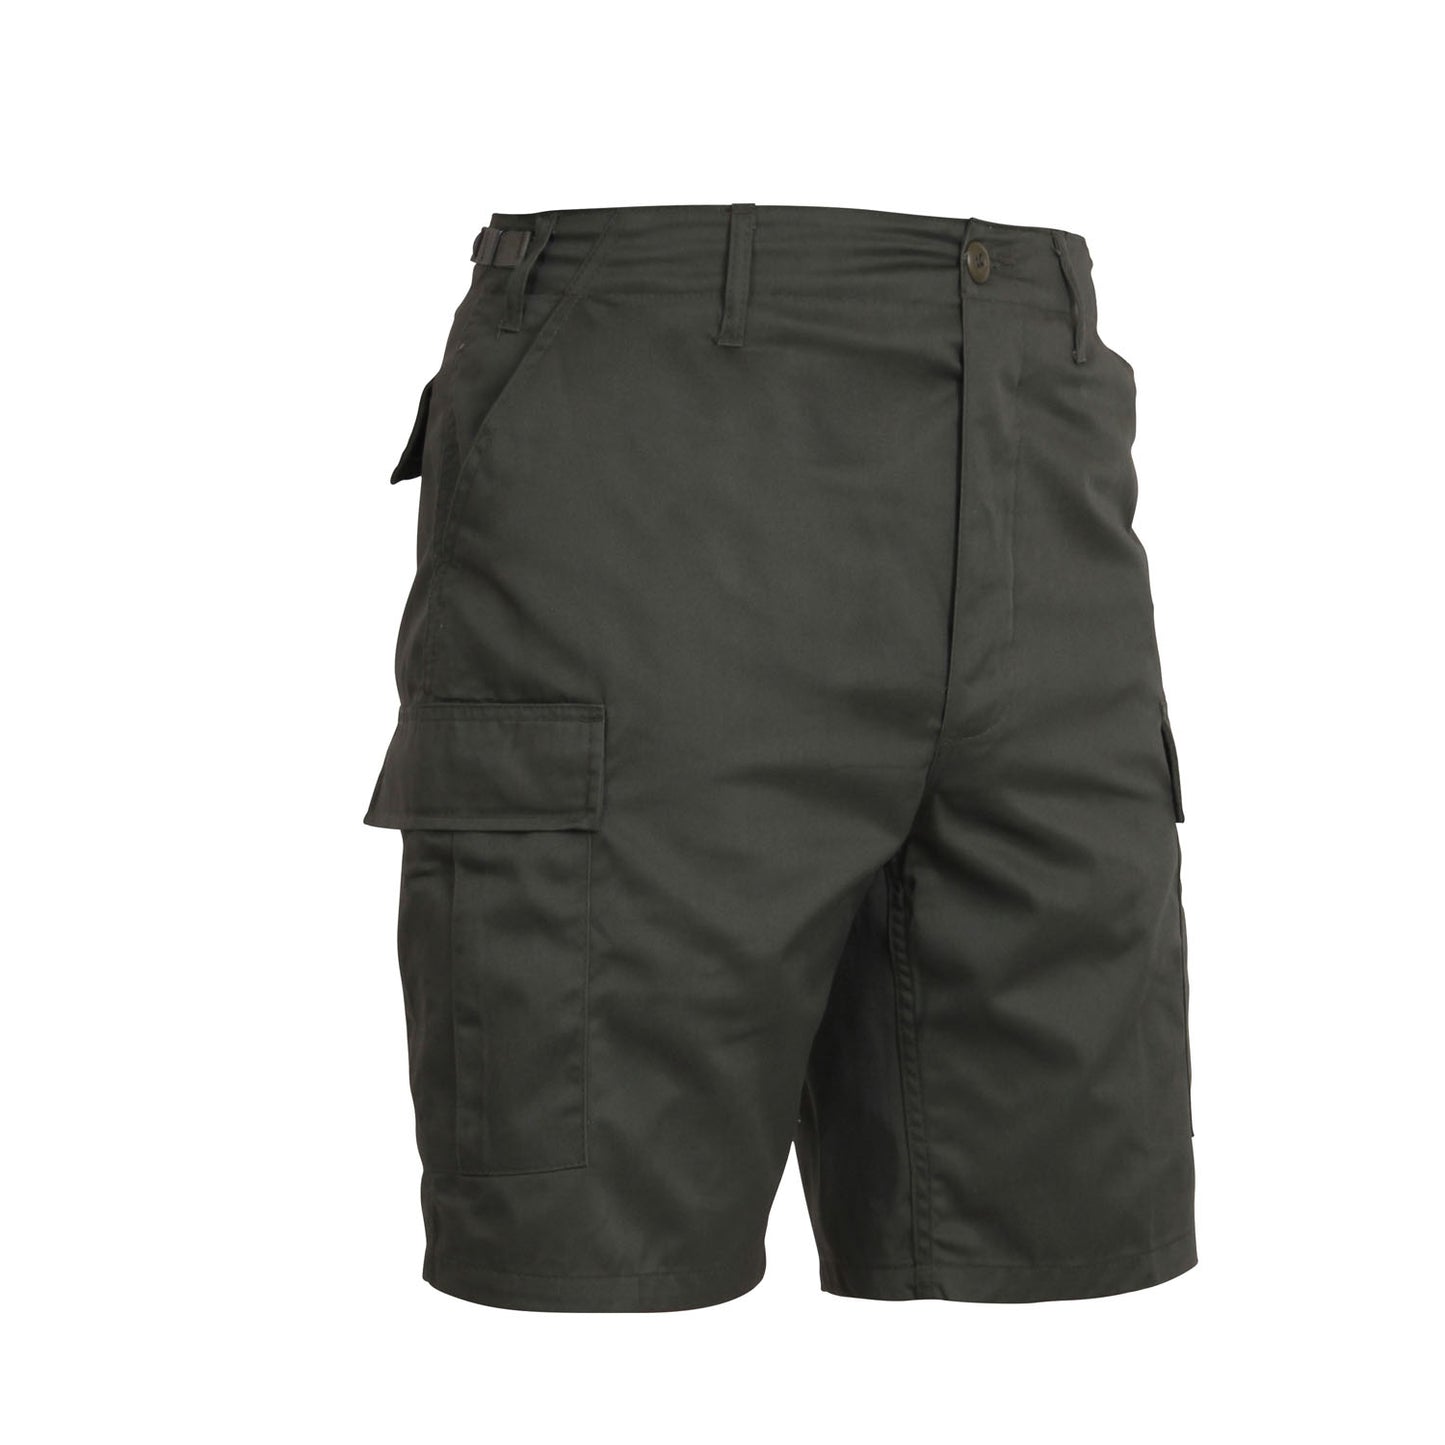 Camo BDU Cargo Shorts Camouflage Rothco